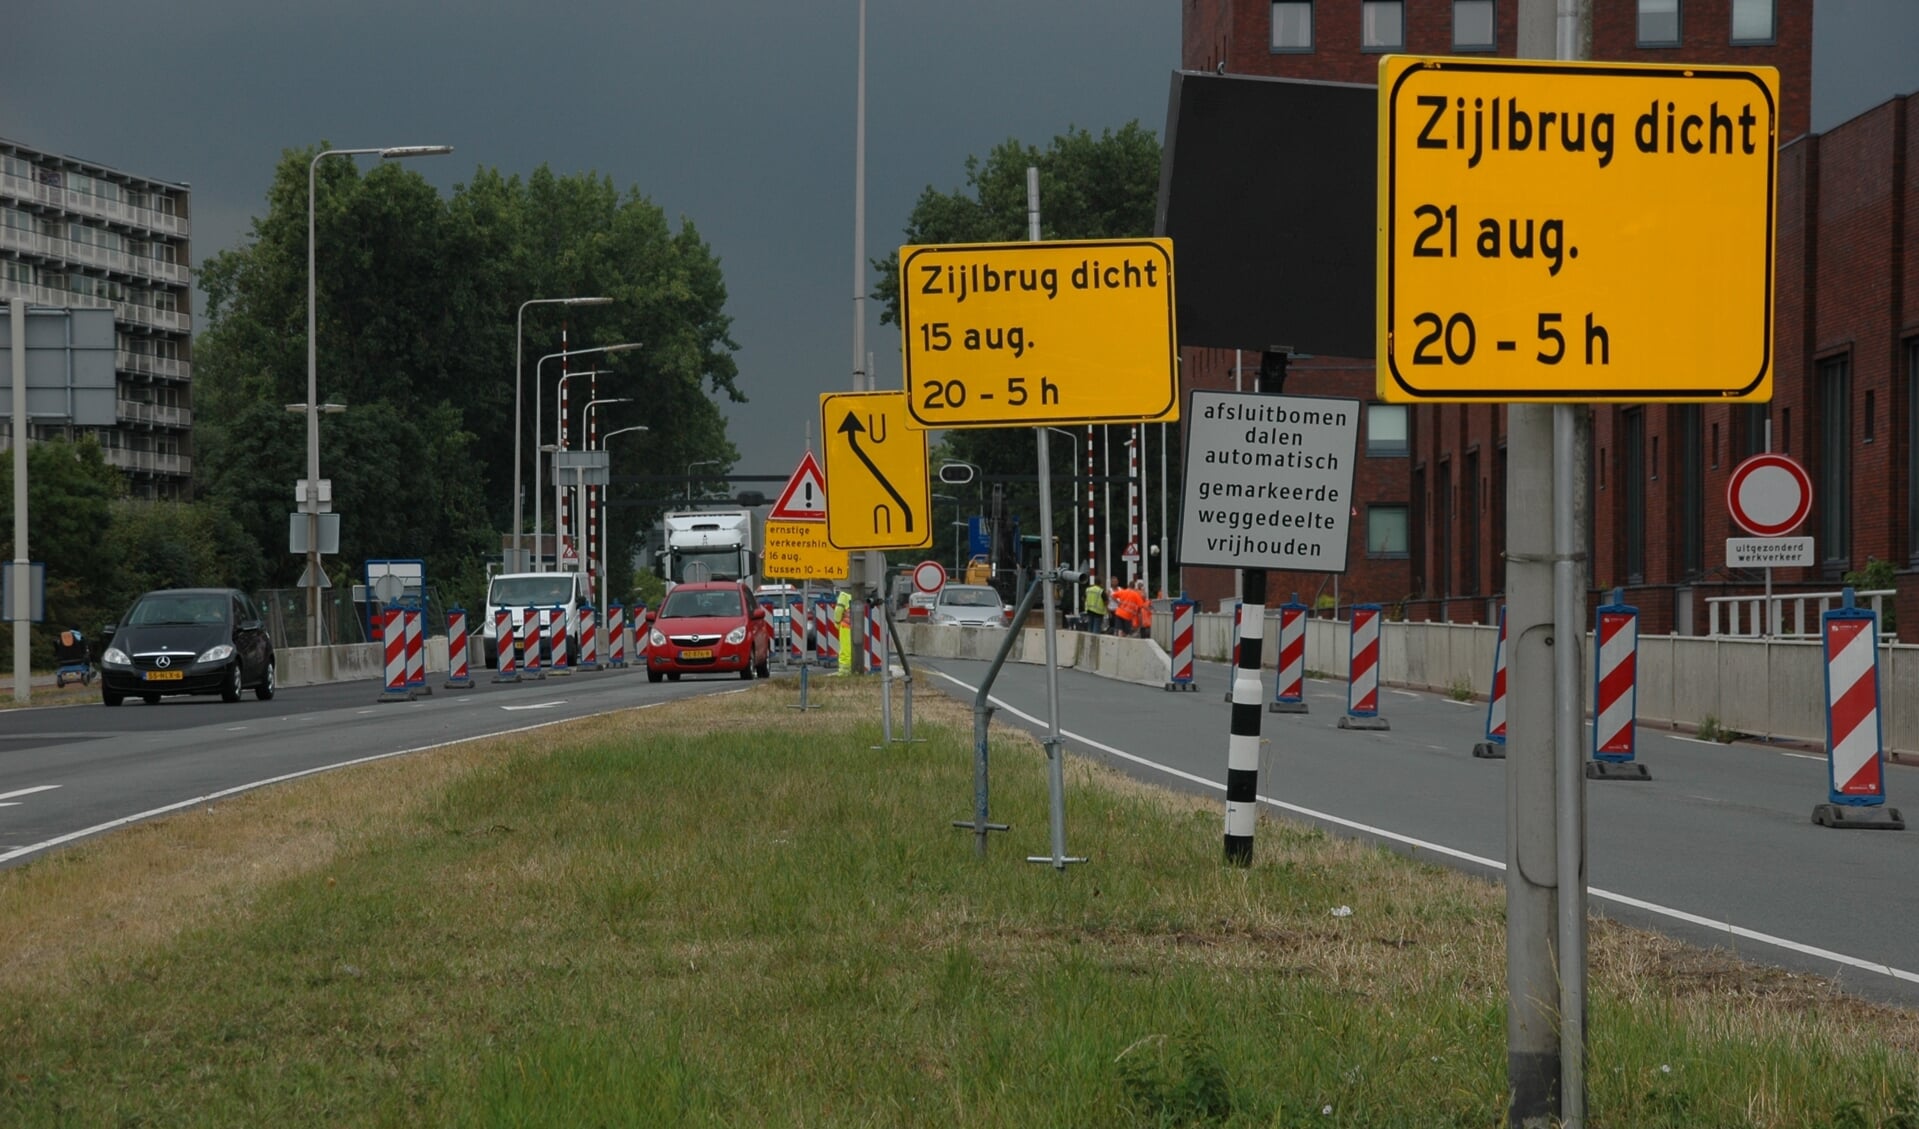 De Zijlbrug, die de Oude Spoorbaan in Leiderdorp verbindt met de Willem de Zwijgerlaan in Leiden.